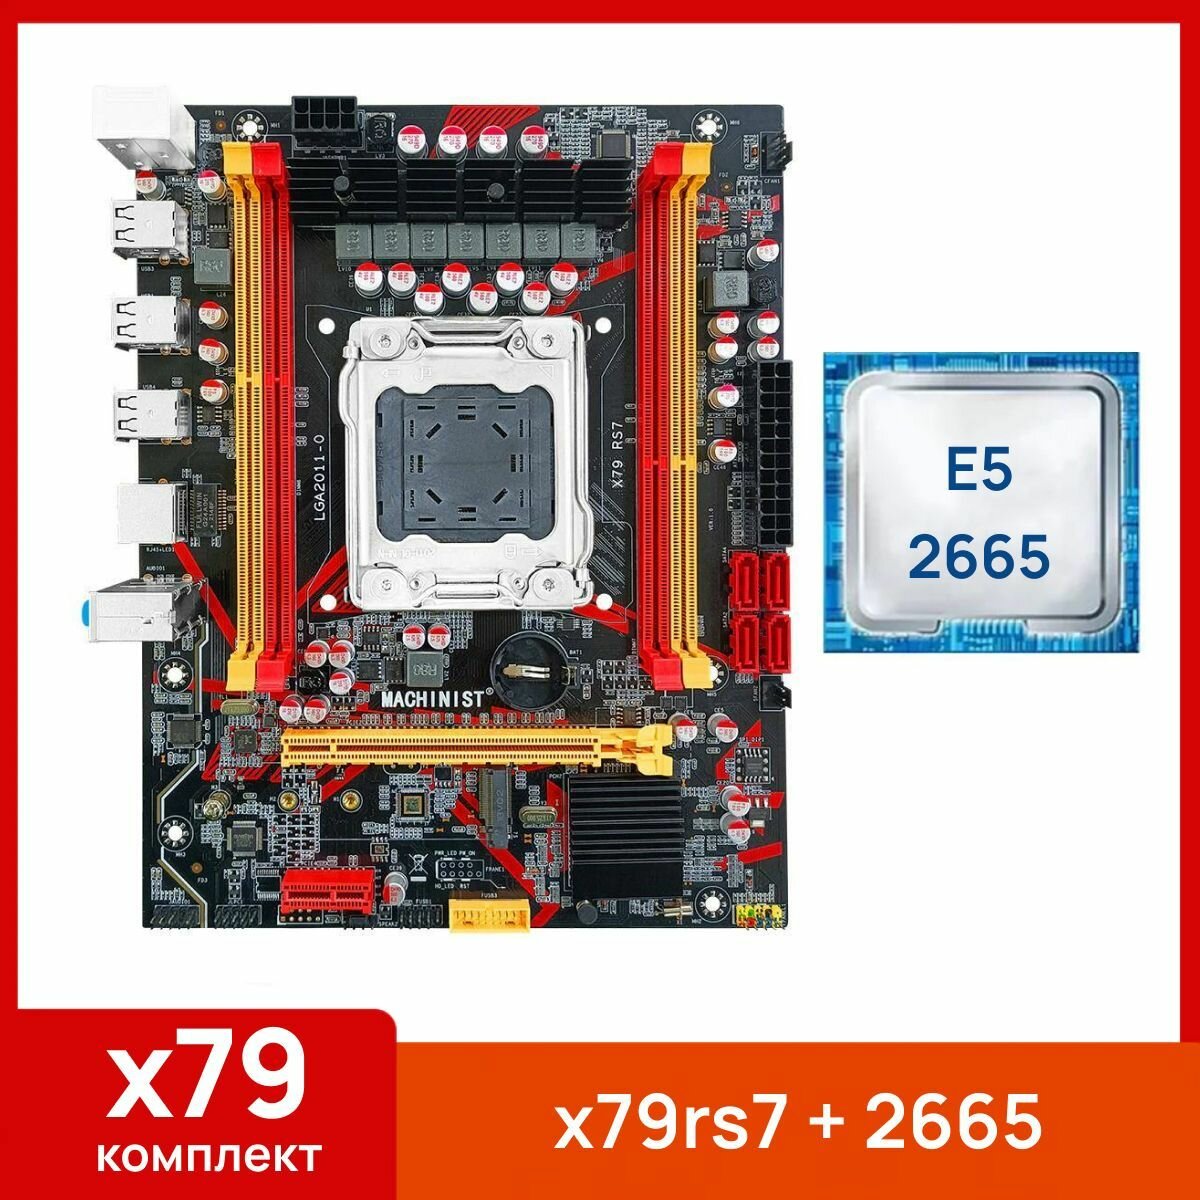 Комплект: Материнская плата Machinist RS-7 + Процессор Xeon E5 2665